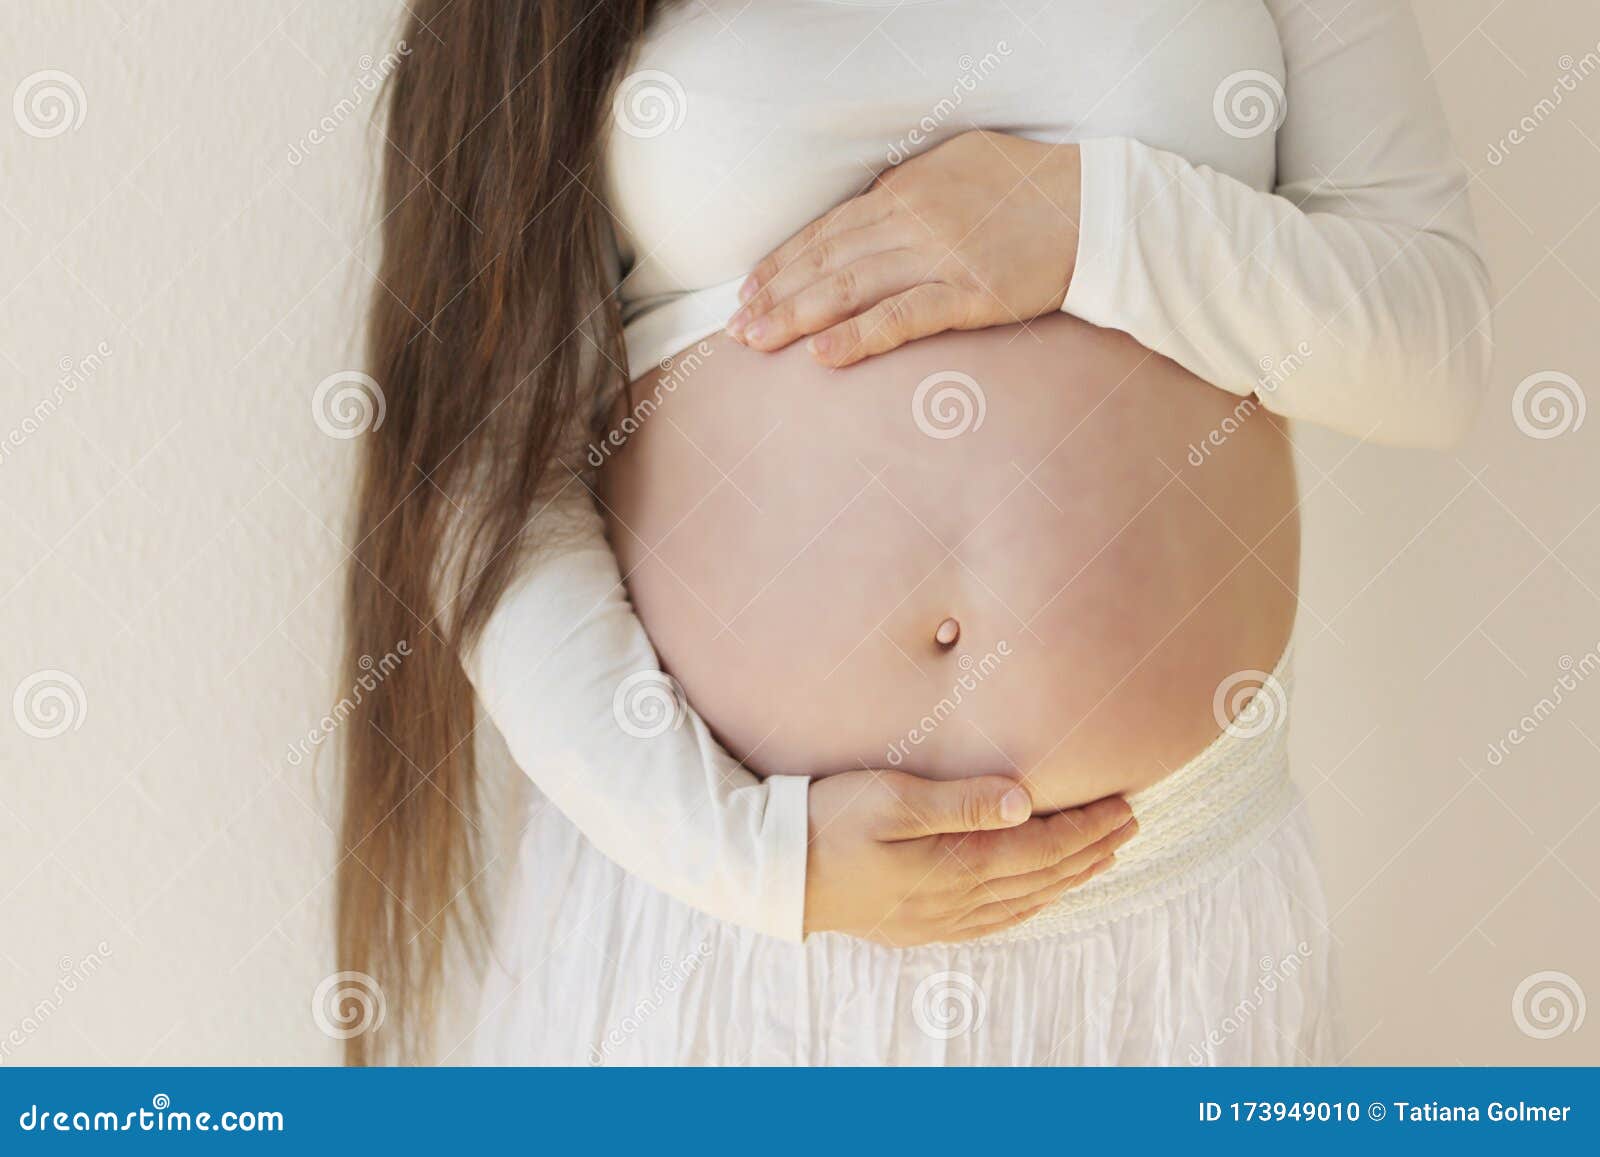 Голый большой живот беременной девушки в белых одеждах, которая держит его внимательно на светлой концепции фона безопасной береме Стоковое Фото - изображение насчитывающей образование, счастливо: 173949010